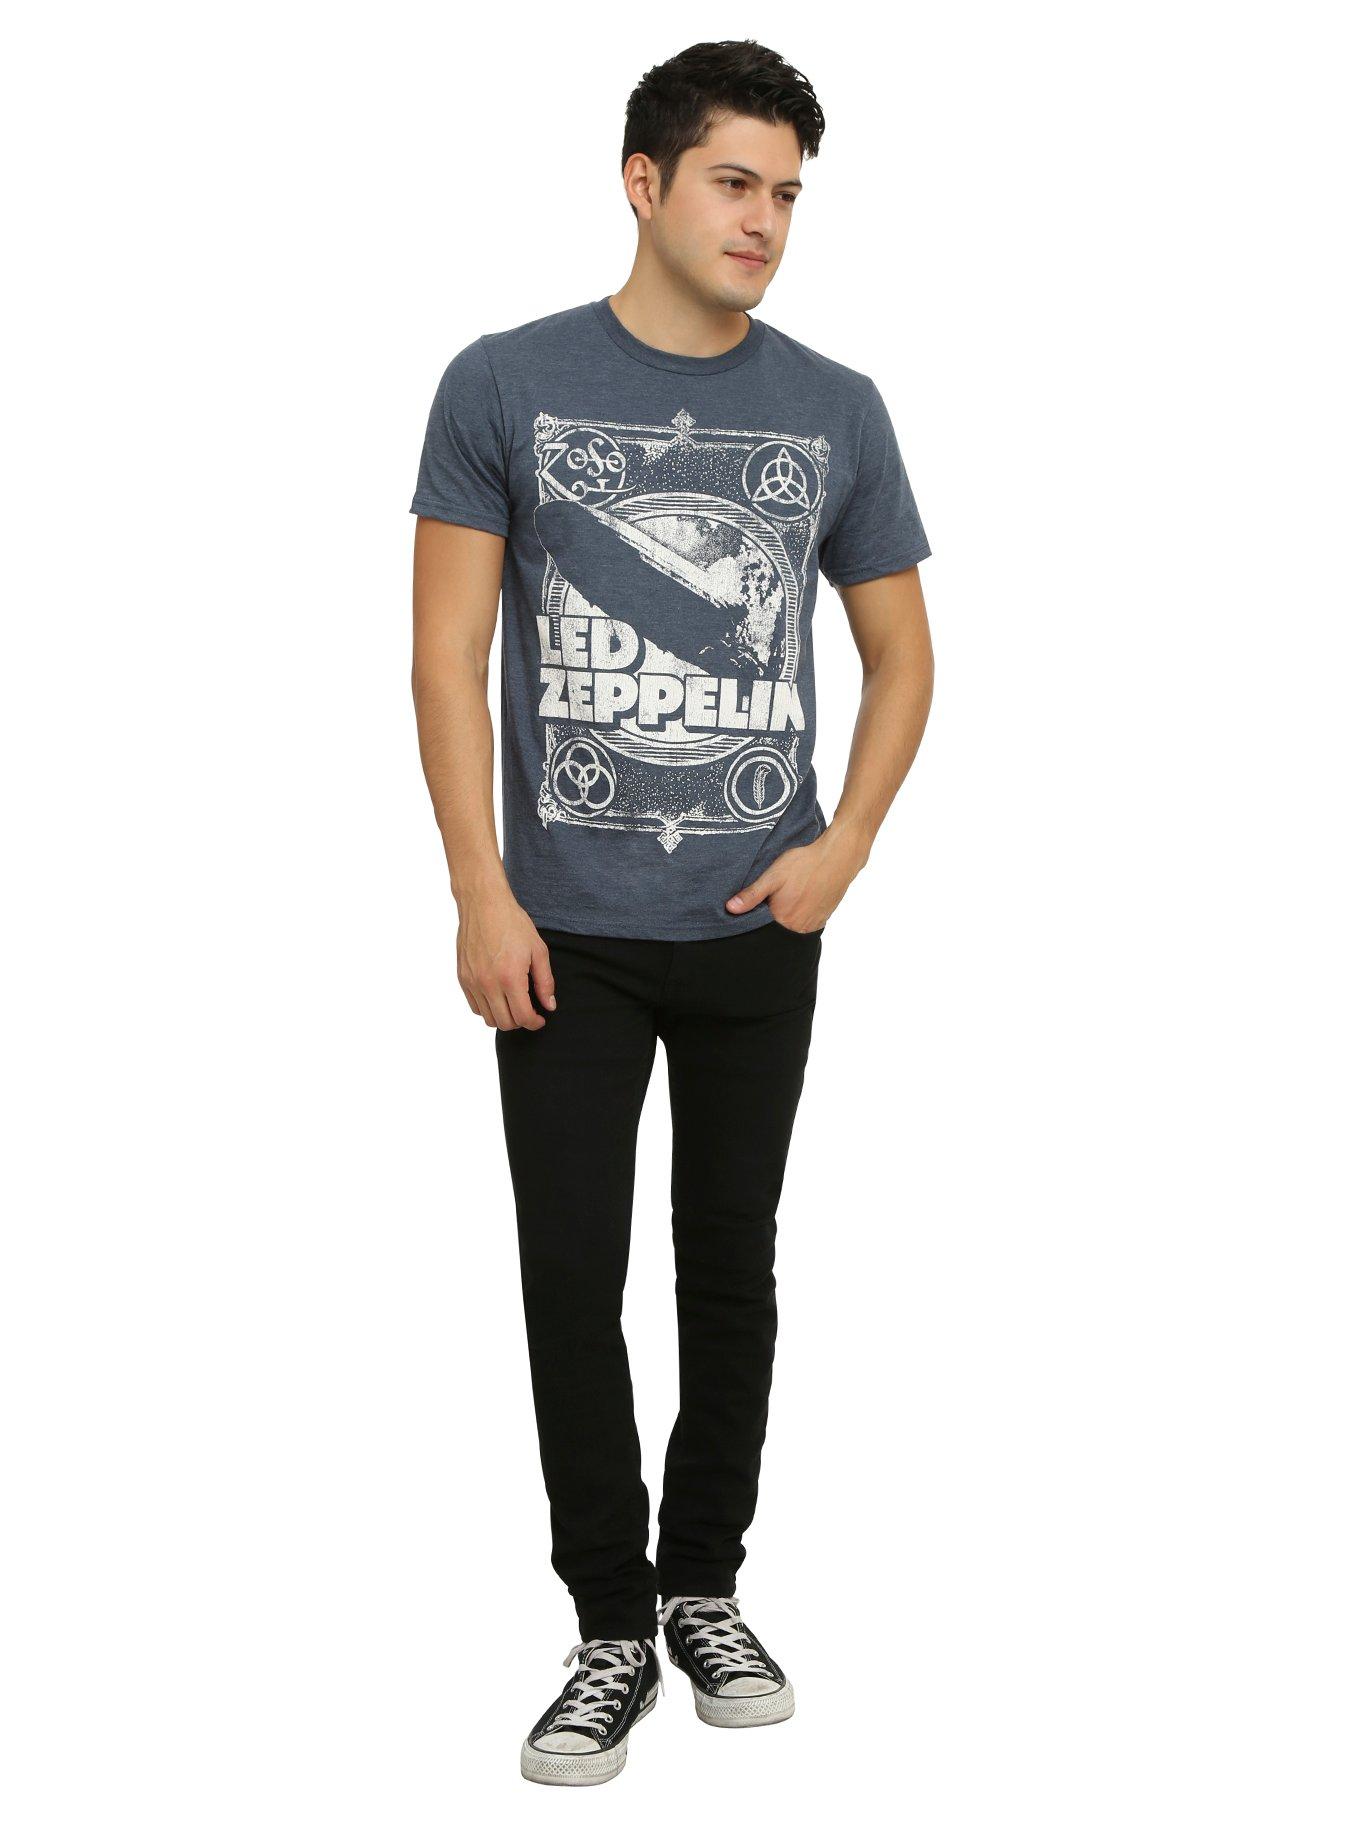 Led Zeppelin Led Zeppelin I T-Shirt, , alternate